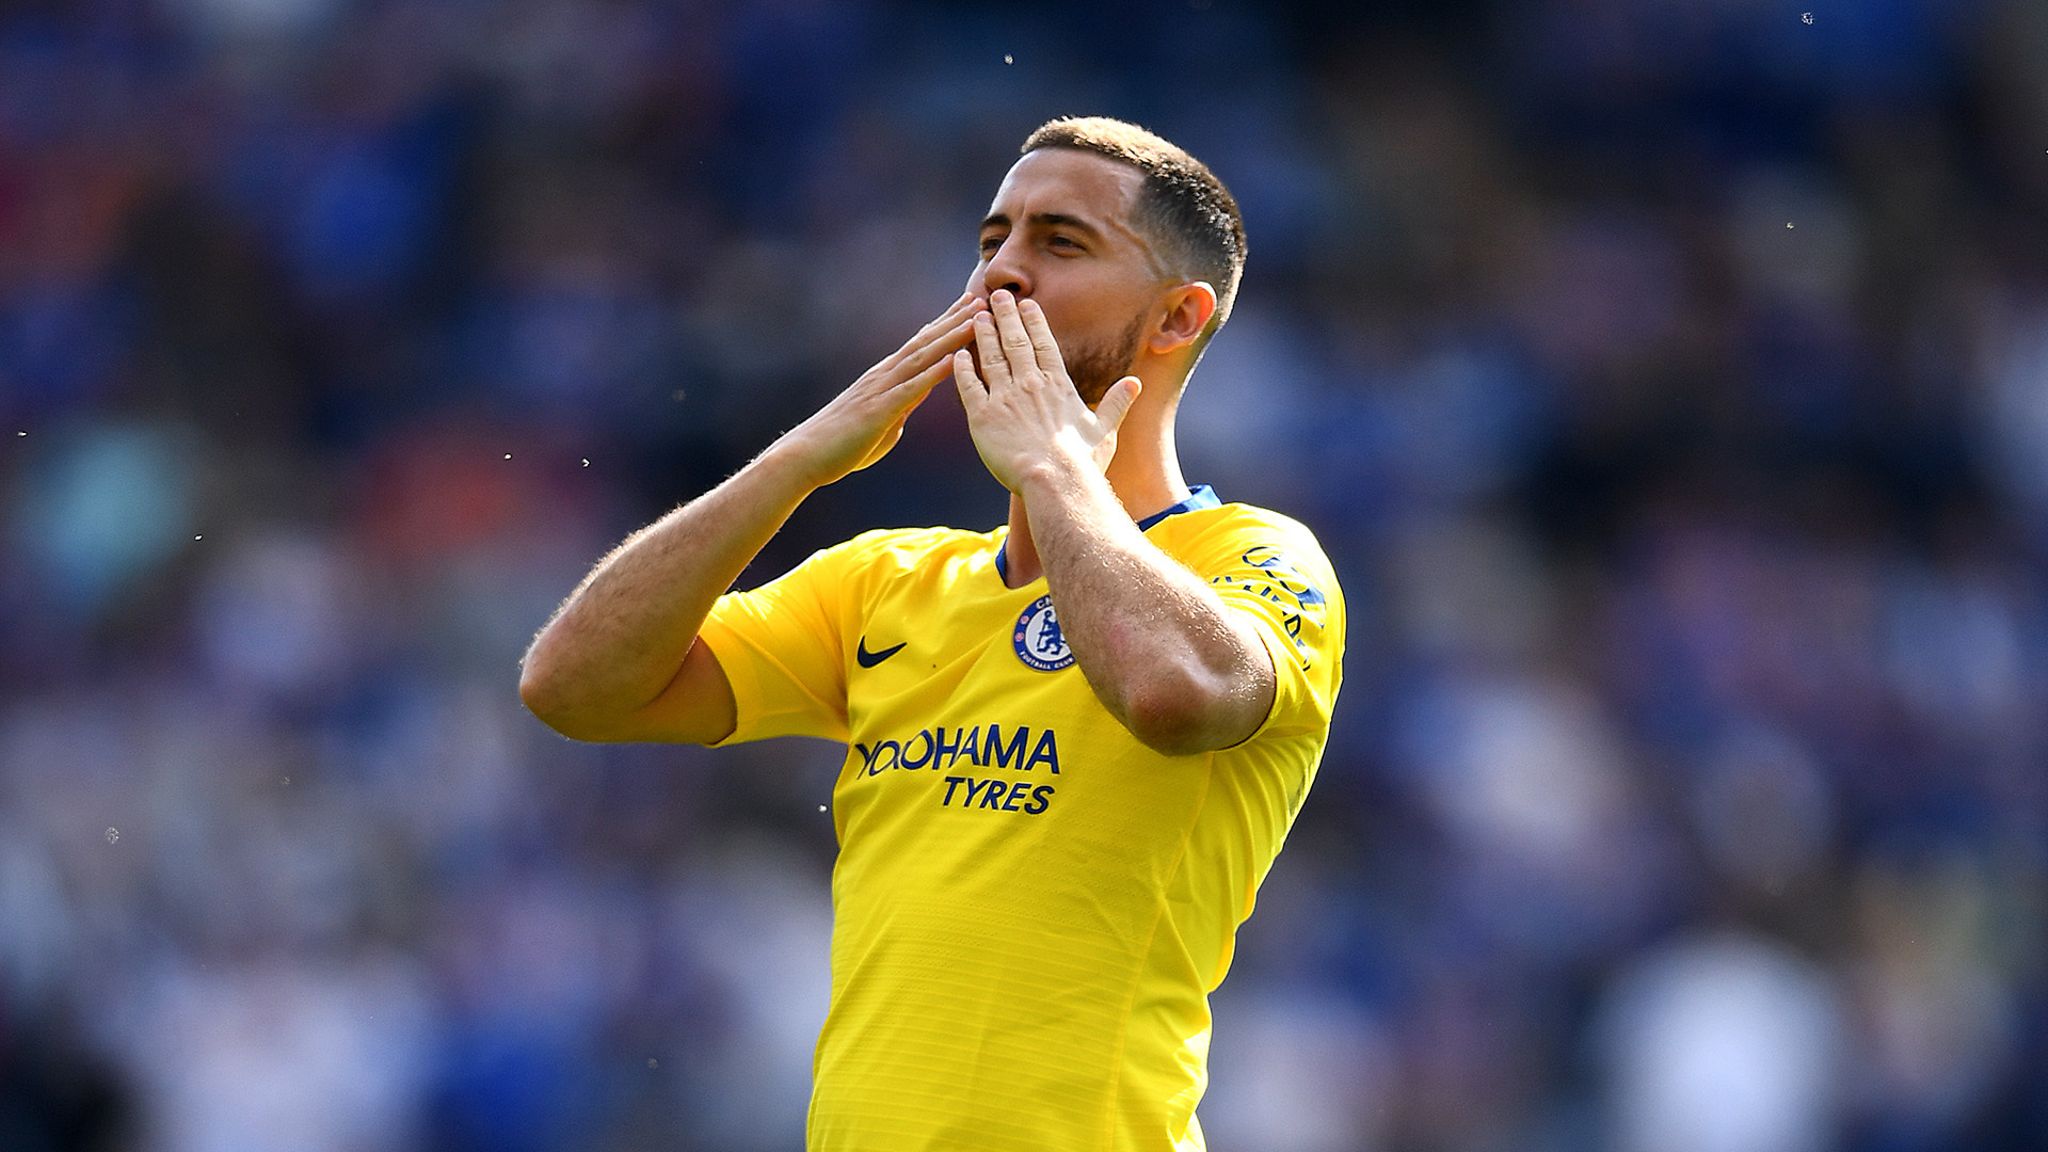 Tin chuyển nhượng sáng 29/5: Chelsea đạt thỏa thuận bán Hazard với mức phí hơn 100 triệu bảng